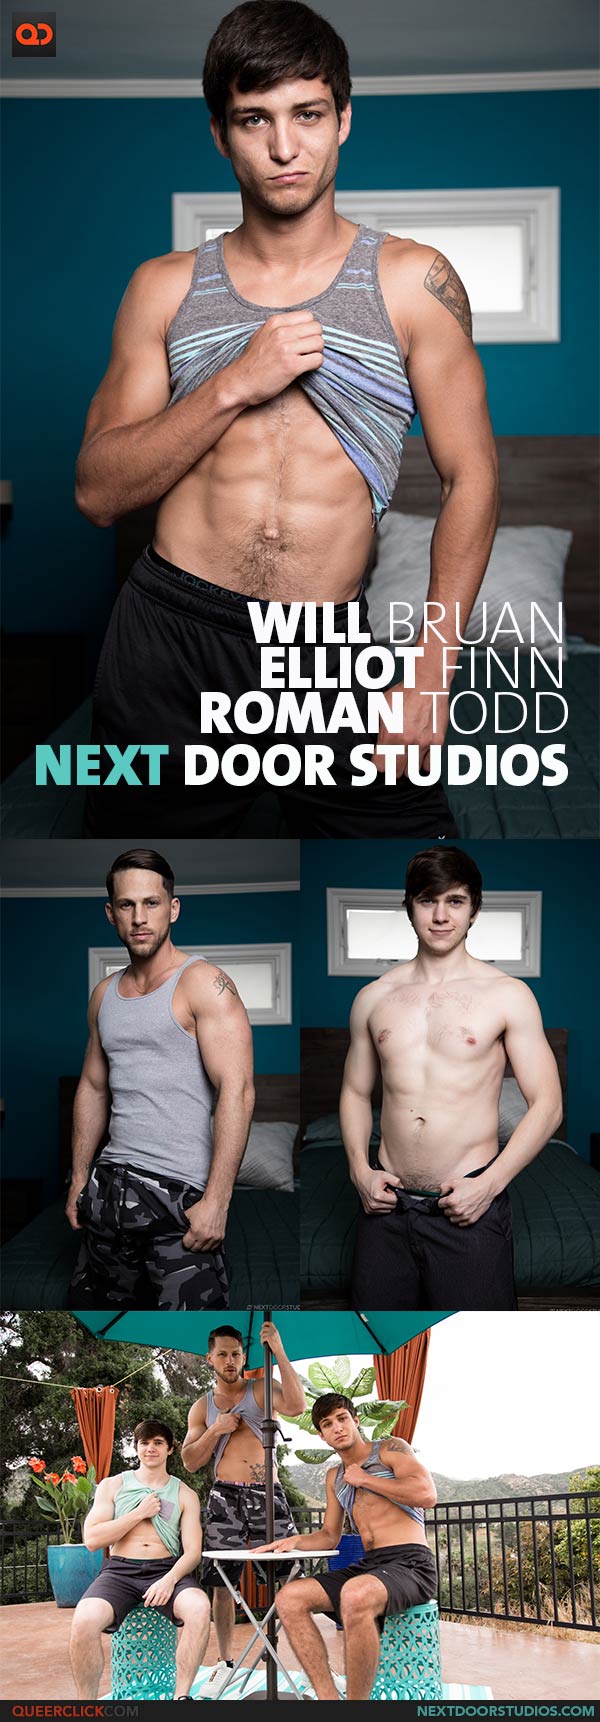 Next Door Studios:  Roman Todd, Elliot Finn and Will Braun 